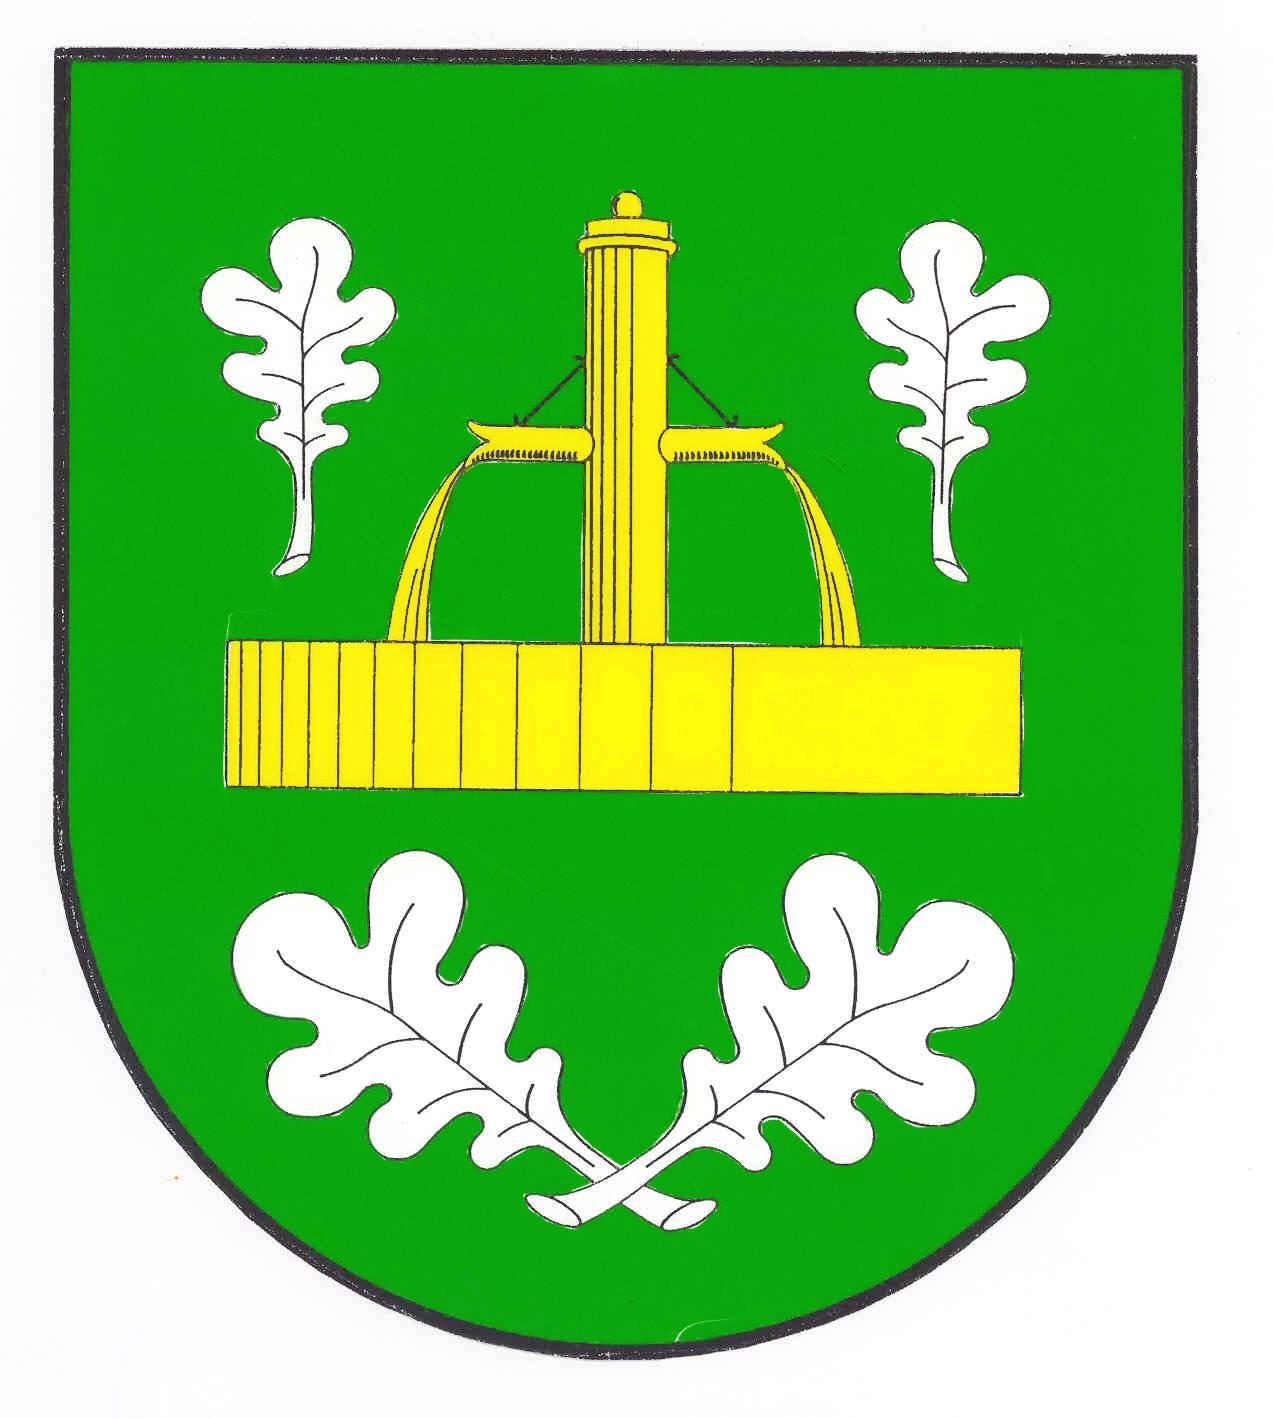 Wappen Gemeinde Quickborn (Dith), Kreis Dithmarschen